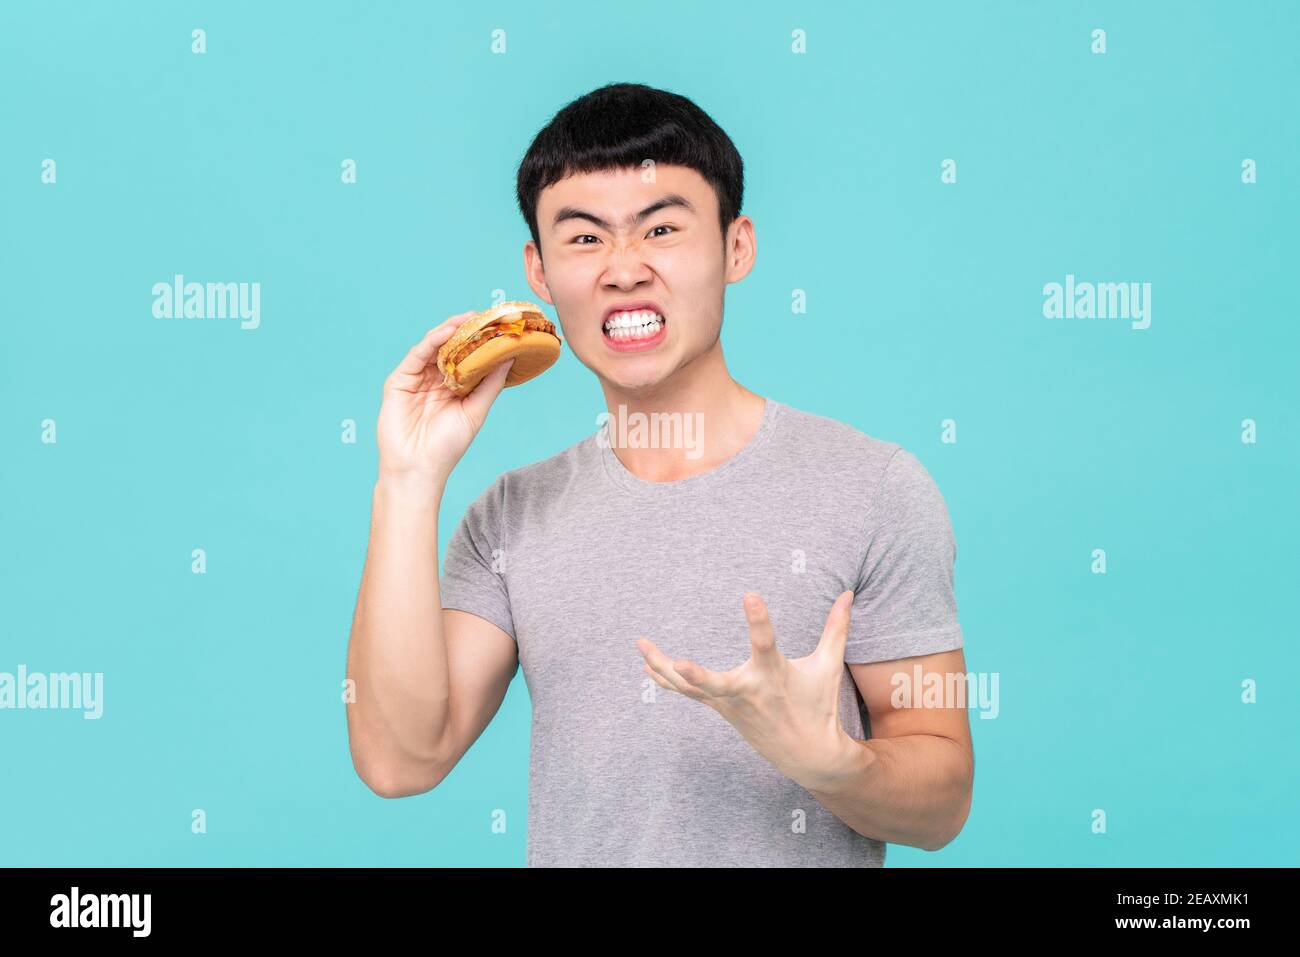 Dieting homme asiatique affamé ayant une drôle d'expression faciale tout en tenant hamburger dans sa main isolé sur fond bleu clair Banque D'Images